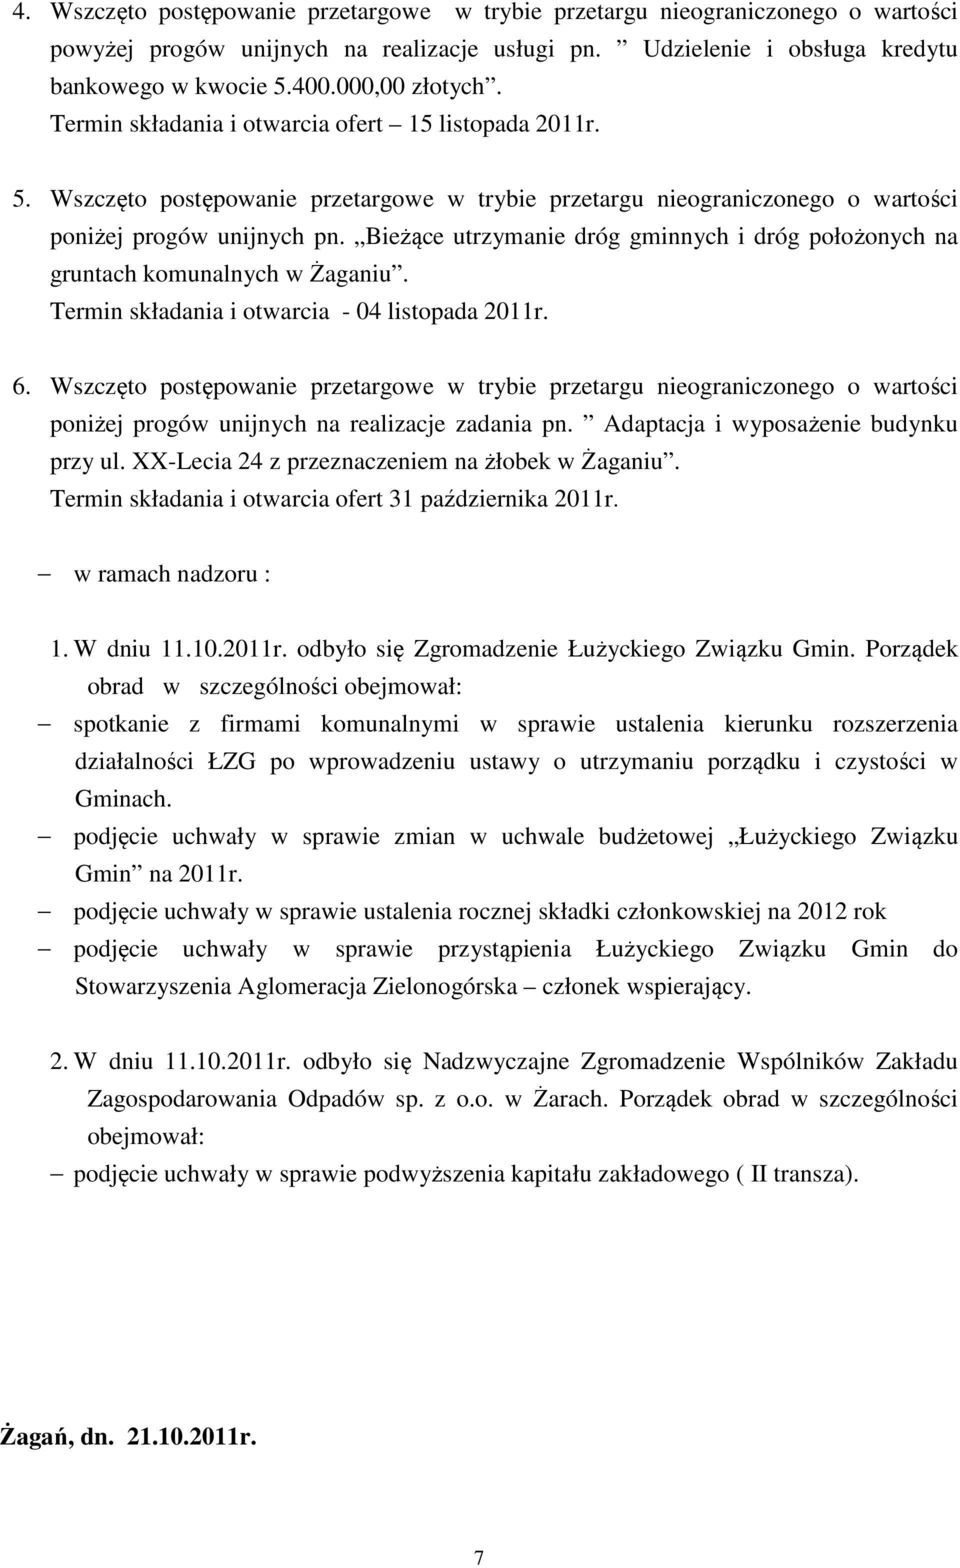 Bieżące utrzymanie dróg gminnych i dróg położonych na gruntach komunalnych w Żaganiu. Termin składania i otwarcia - 04 listopada 2011r. 6.